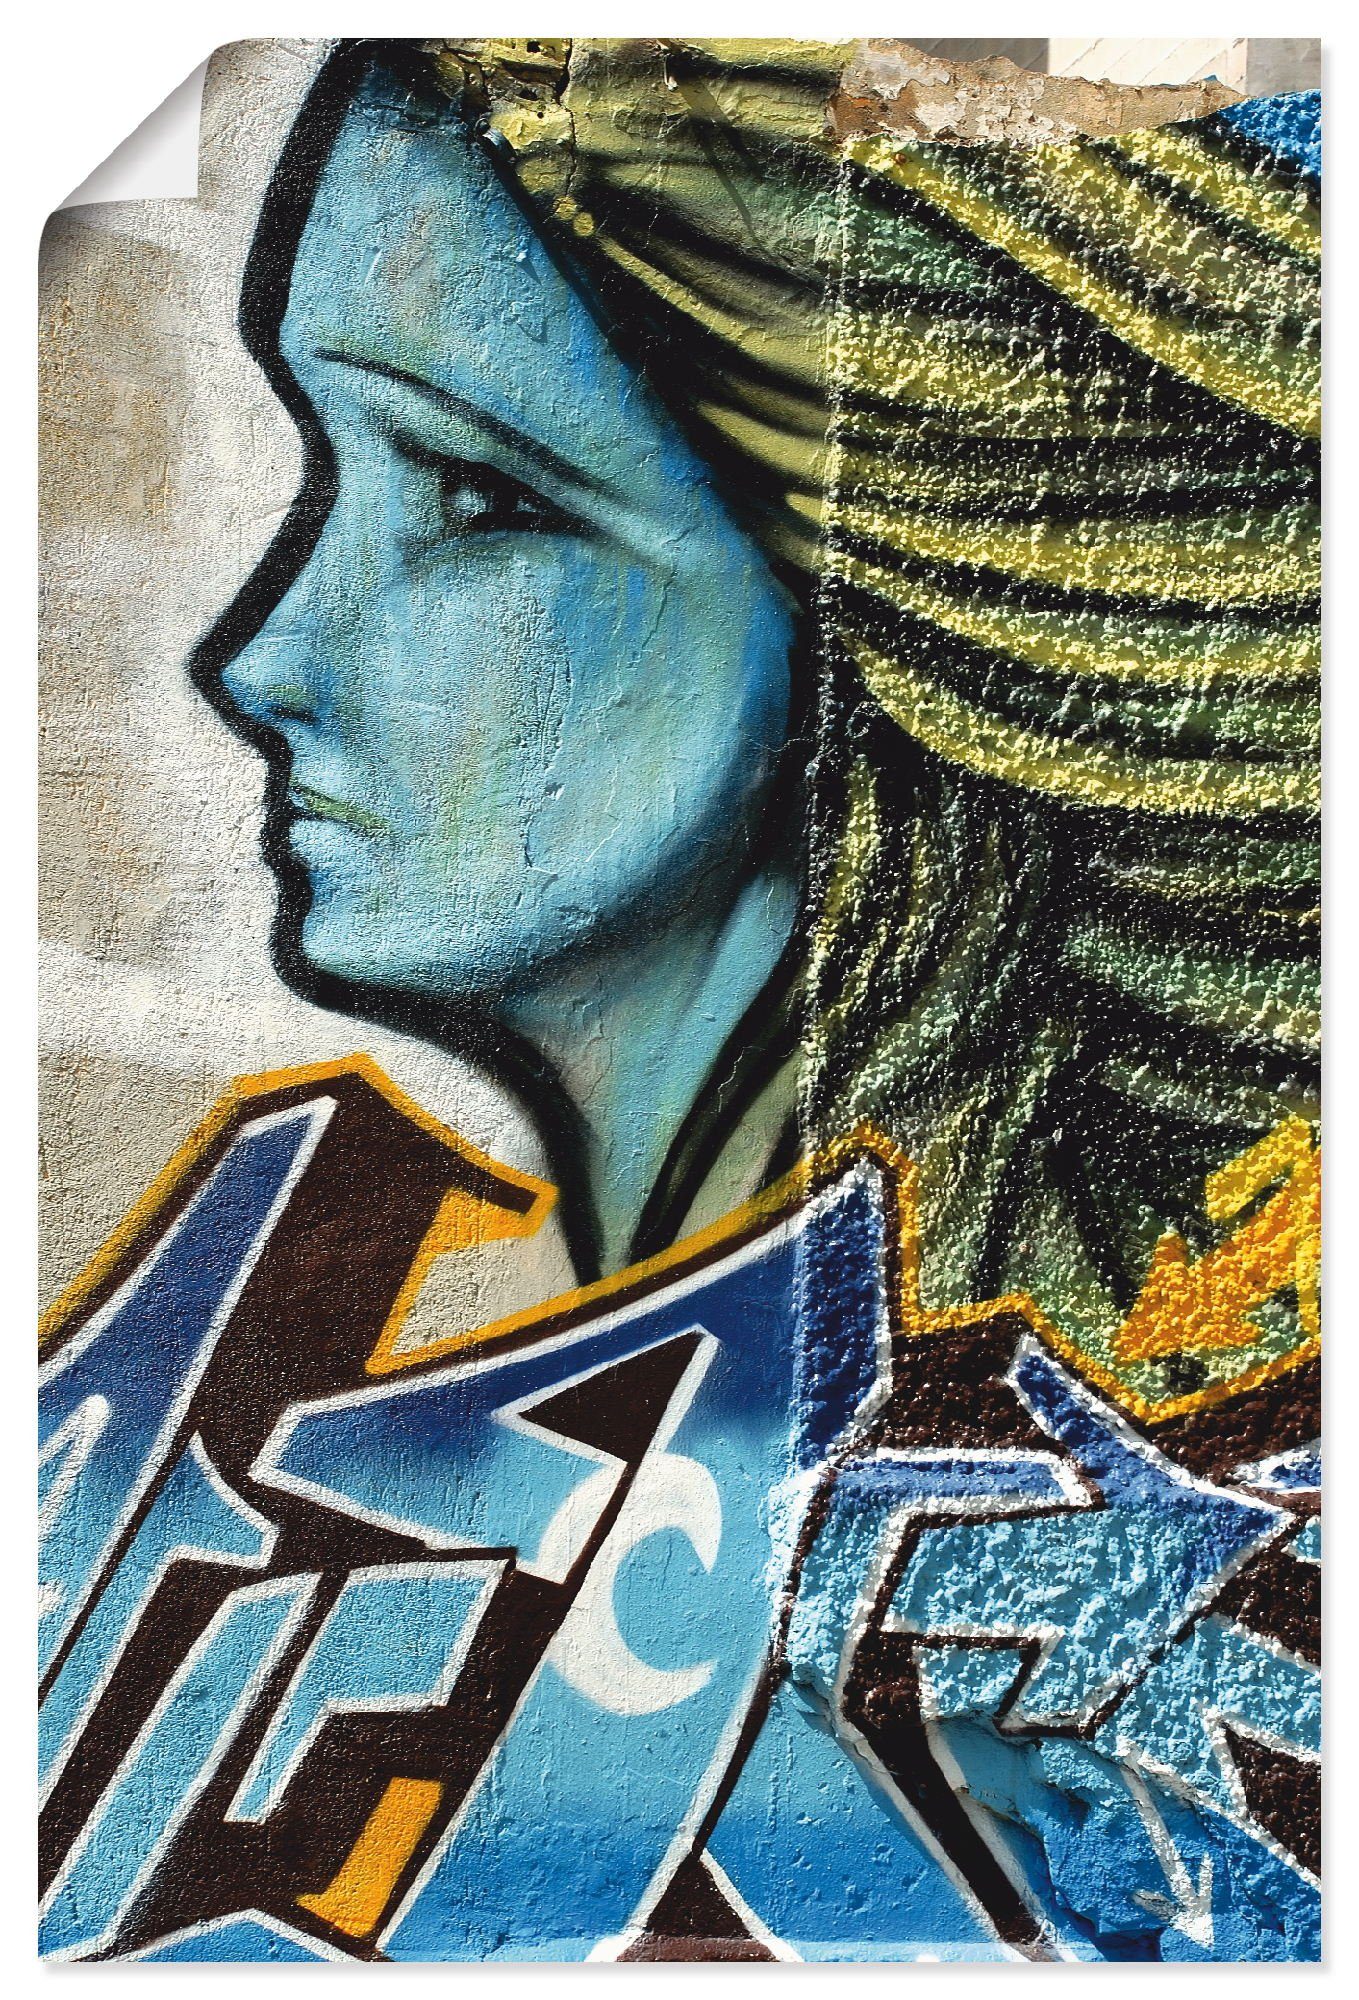 Artland Artprint Graffiti - vrouw in blauw in vele afmetingen & productsoorten - artprint van aluminium / artprint voor buiten, artprint op linnen, poster, muursticker / wandfolie